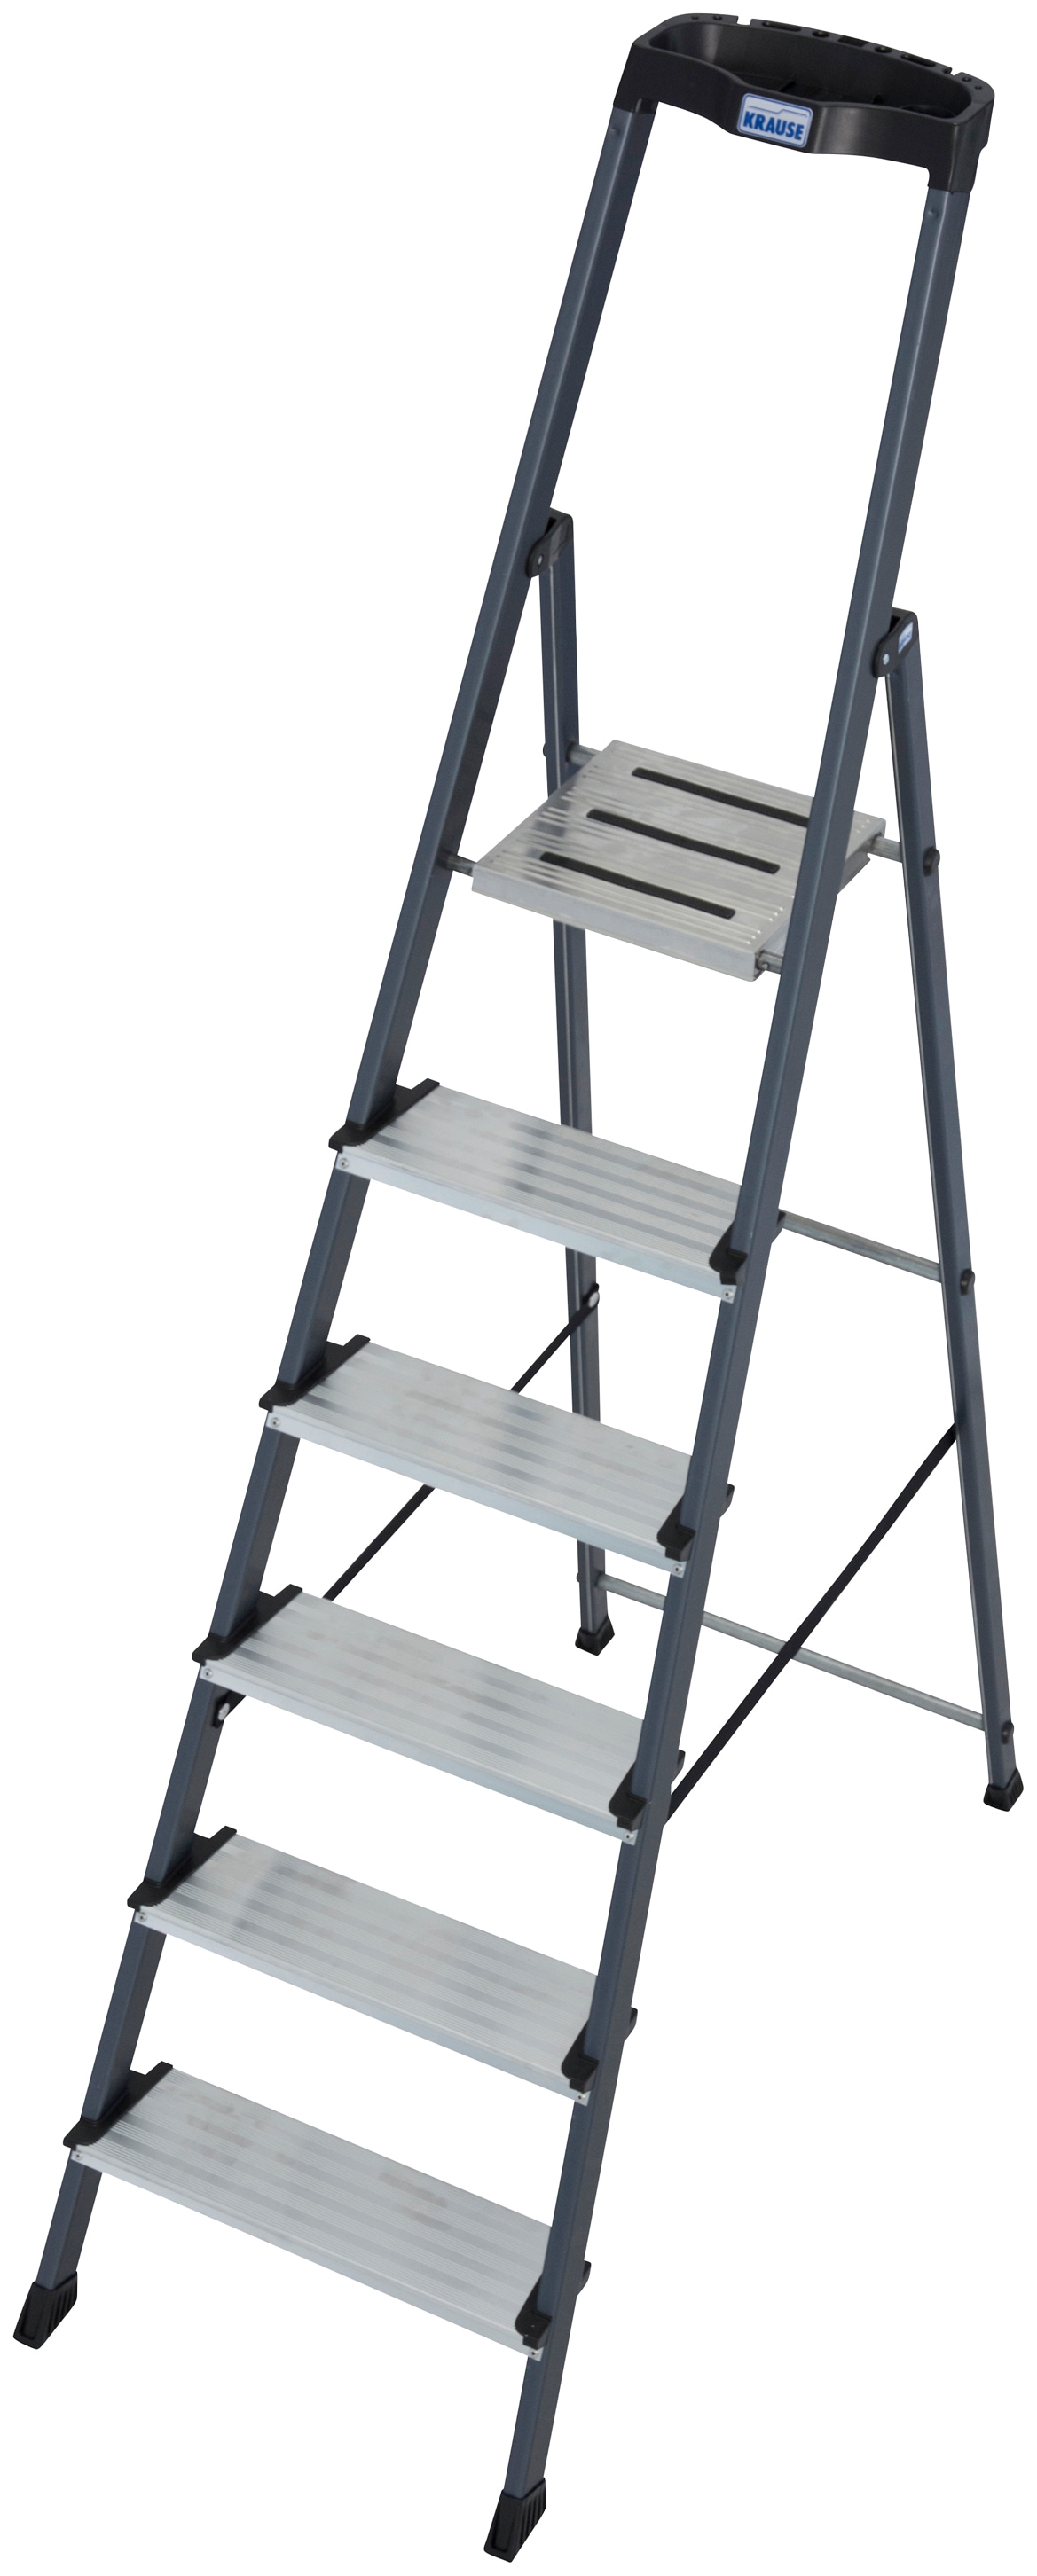 KRAUSE Stehleiter "Securo", Alu eloxiert, 1x6 Stufen, Arbeitshöhe ca. 330 cm